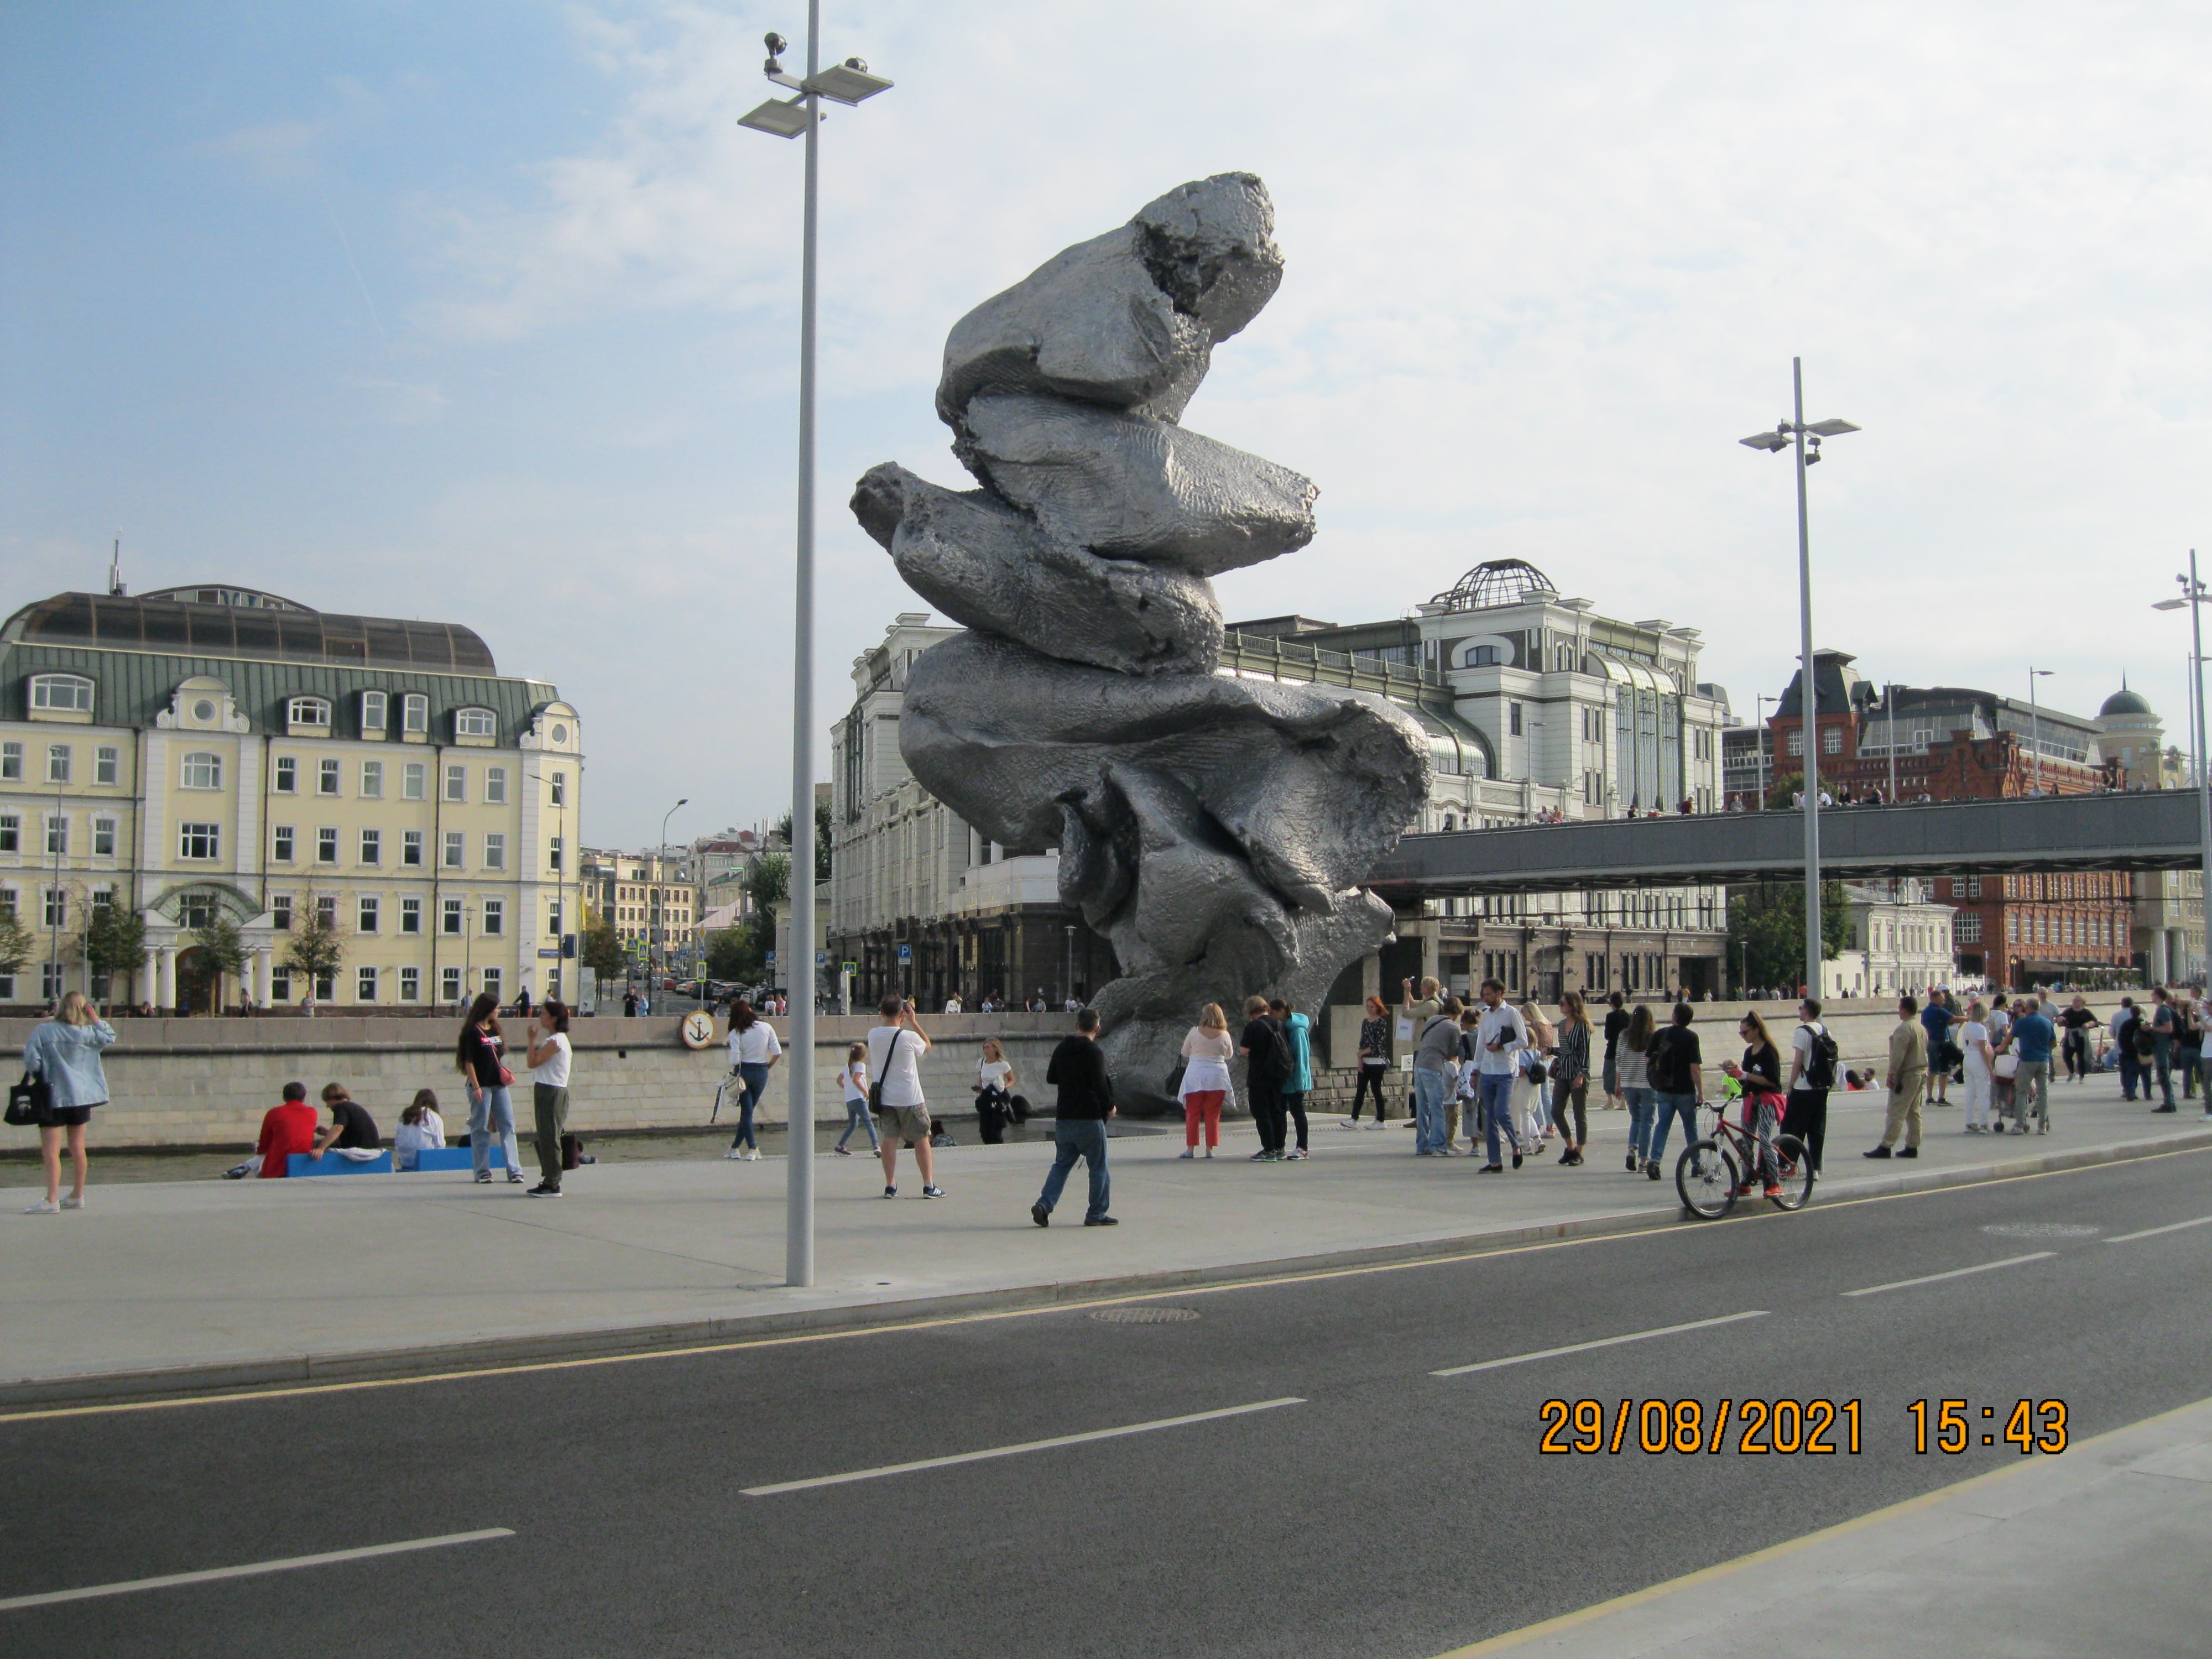 Памятник какашке установили в центре Москвы на Болотной. Официальное название объекта-Скульптура швейцарского художника Урса Фишера «Большая глина №4»